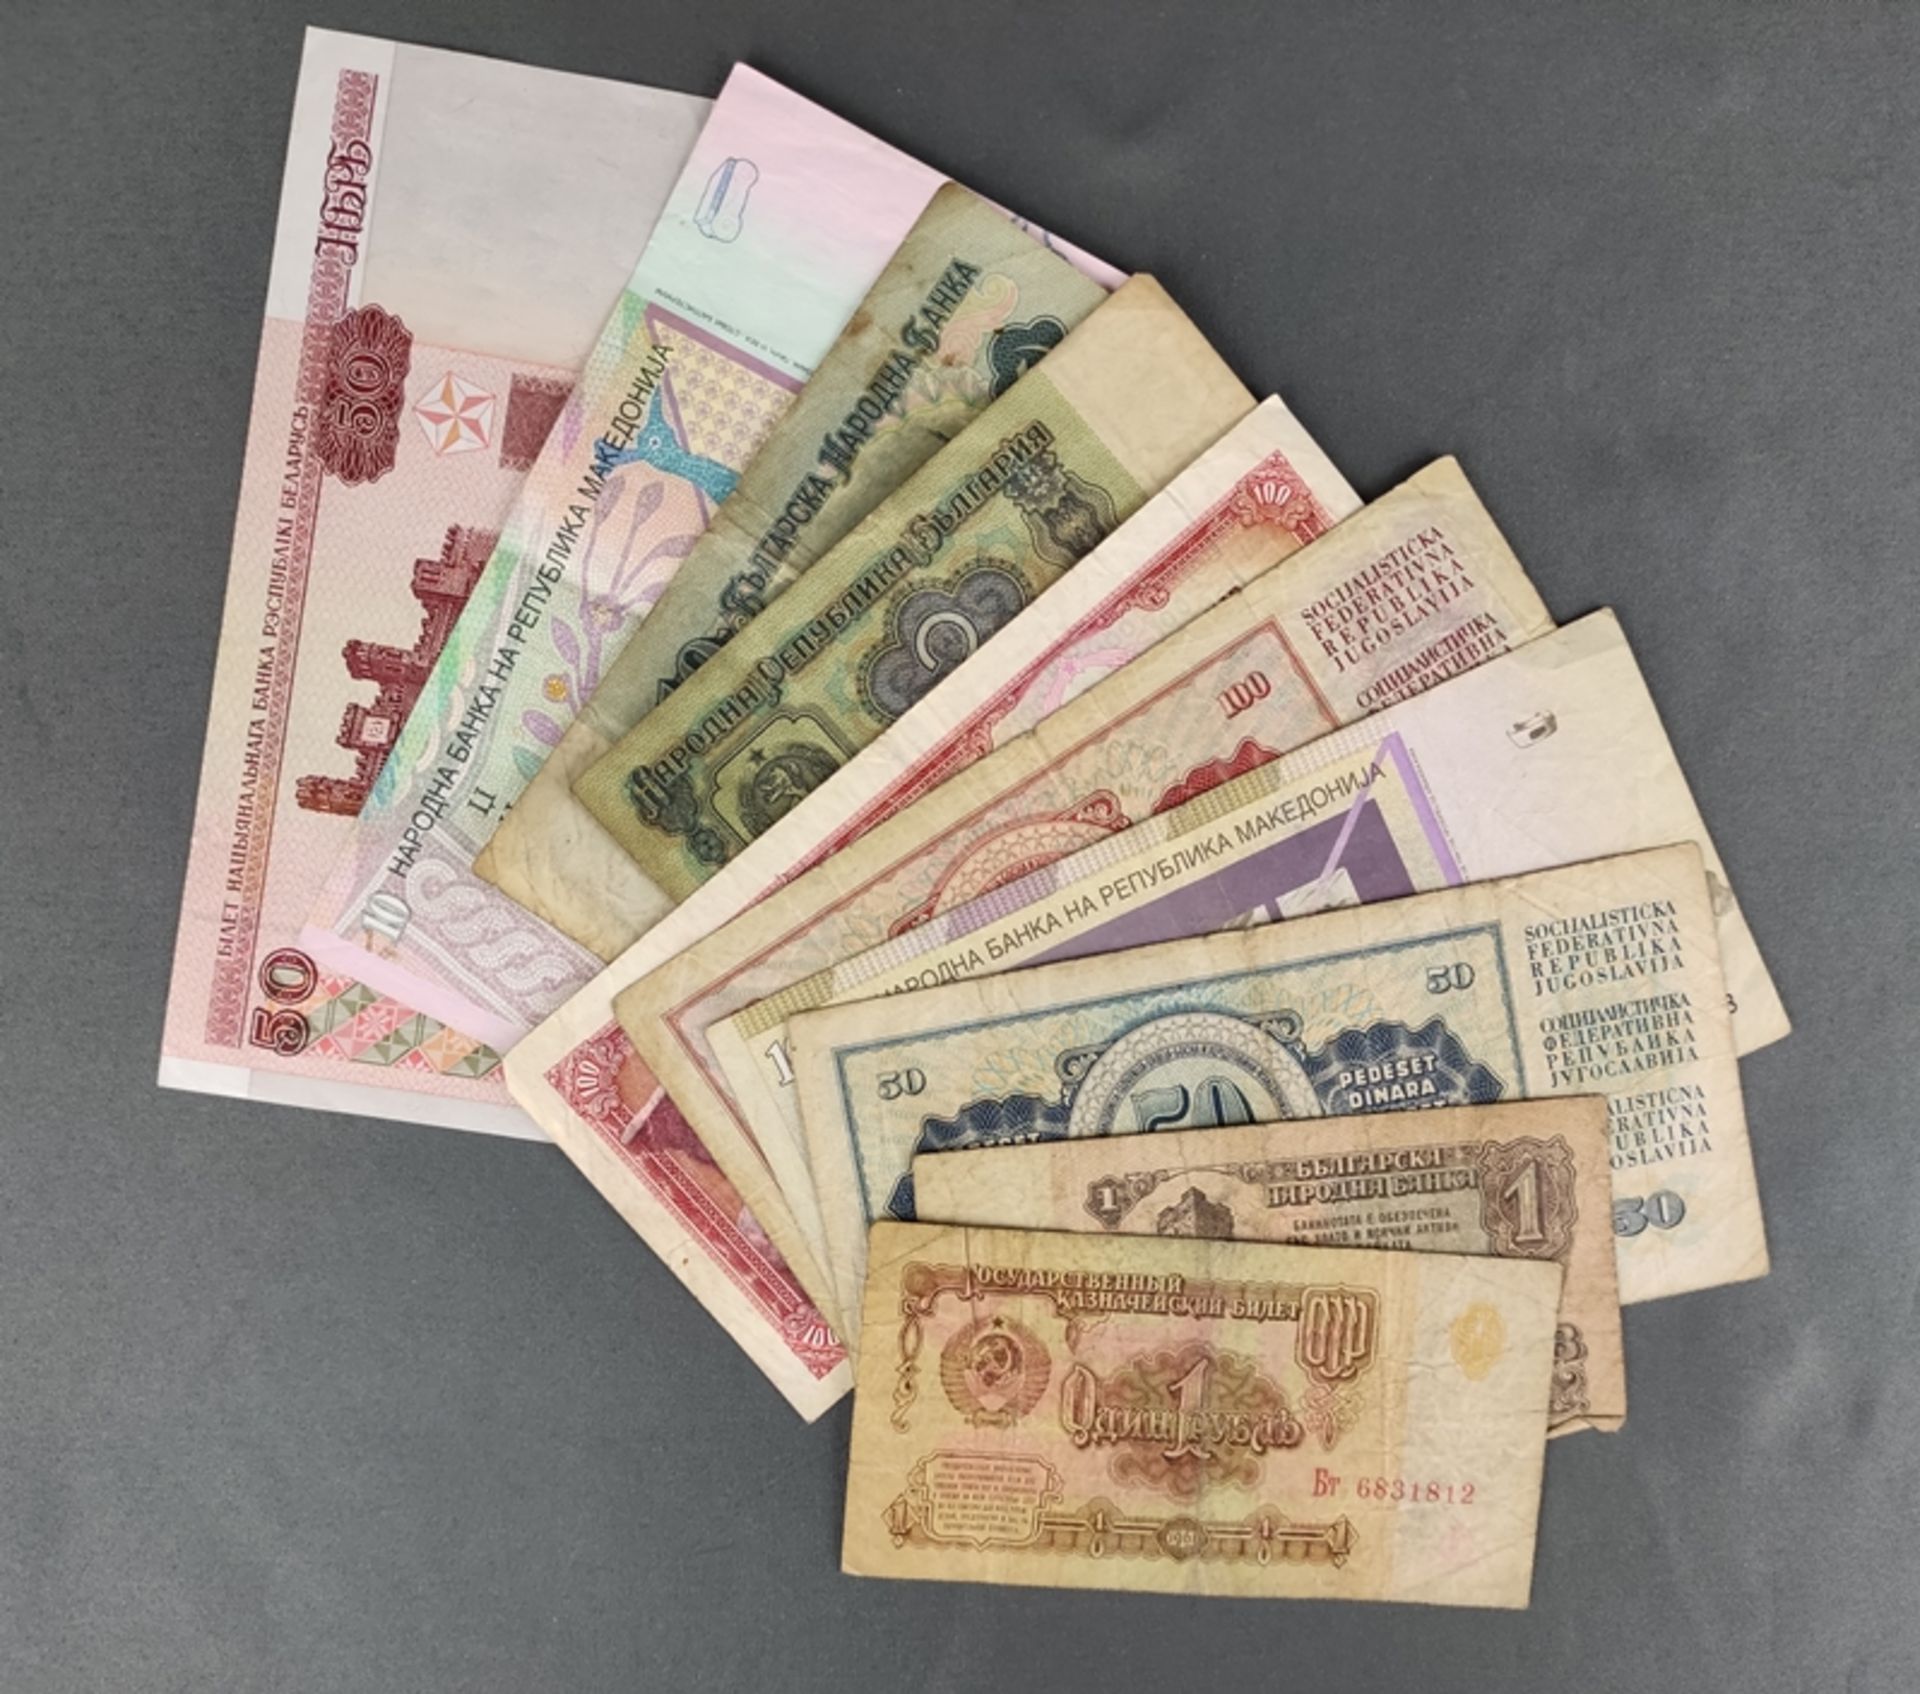 Geldschein-Konvolut, 10 Scheine; 1 Rubel, Russland, 1961, 1 Lev, Bulgarien, 1974, 2 Leva, Bulgarien